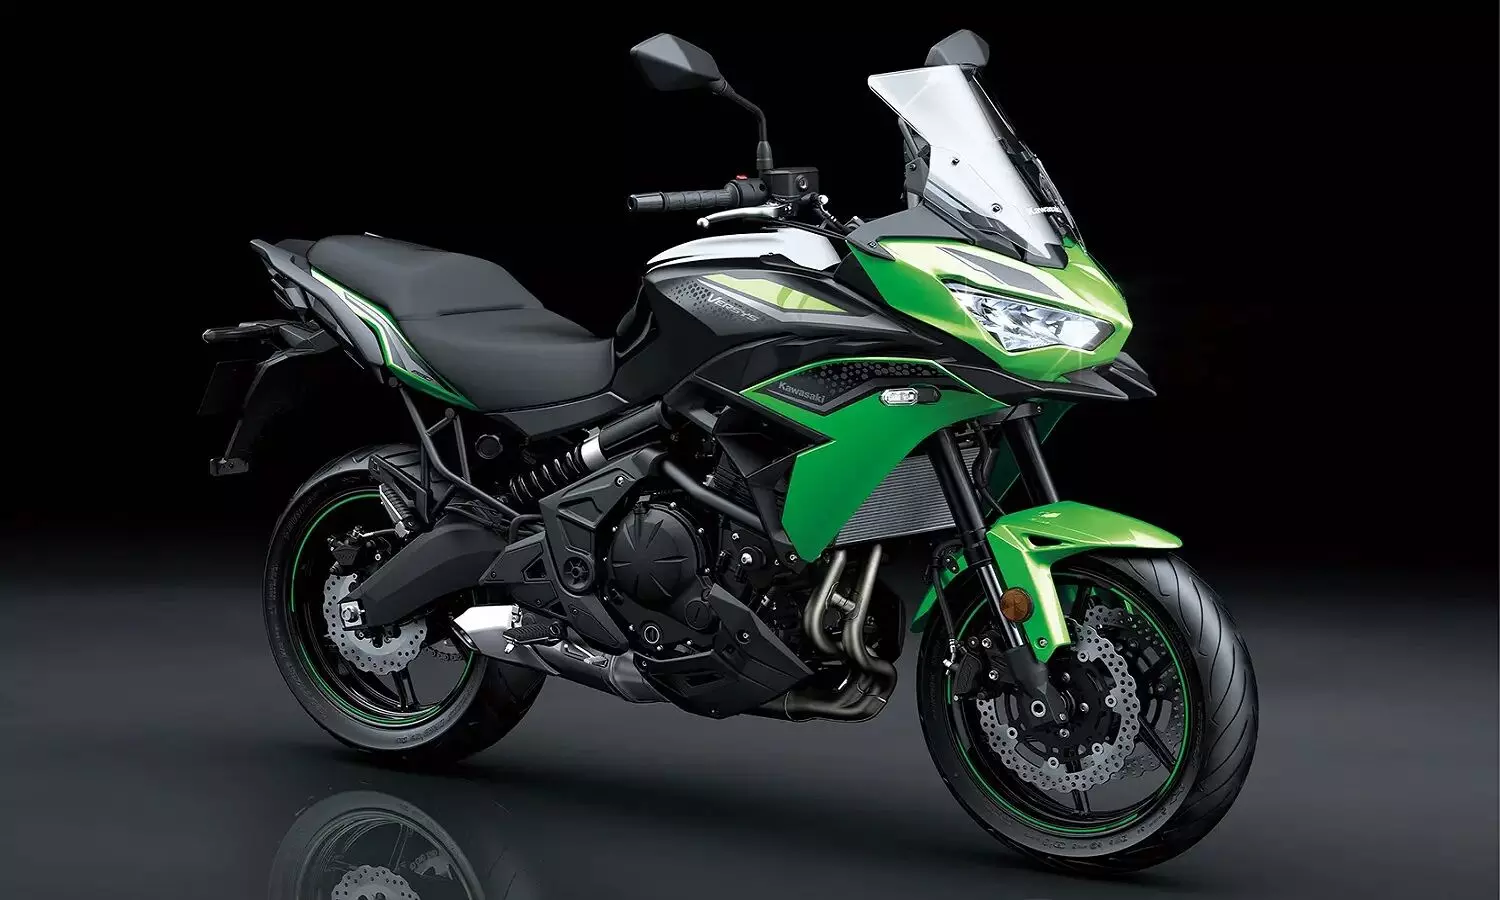 Kawasaki Versys 650 Facelift Price In India: कावासाकी की नई बाइक Versys 650 लॉन्च होने वाली है, स्पेसिफिकेशन जान लीजिये